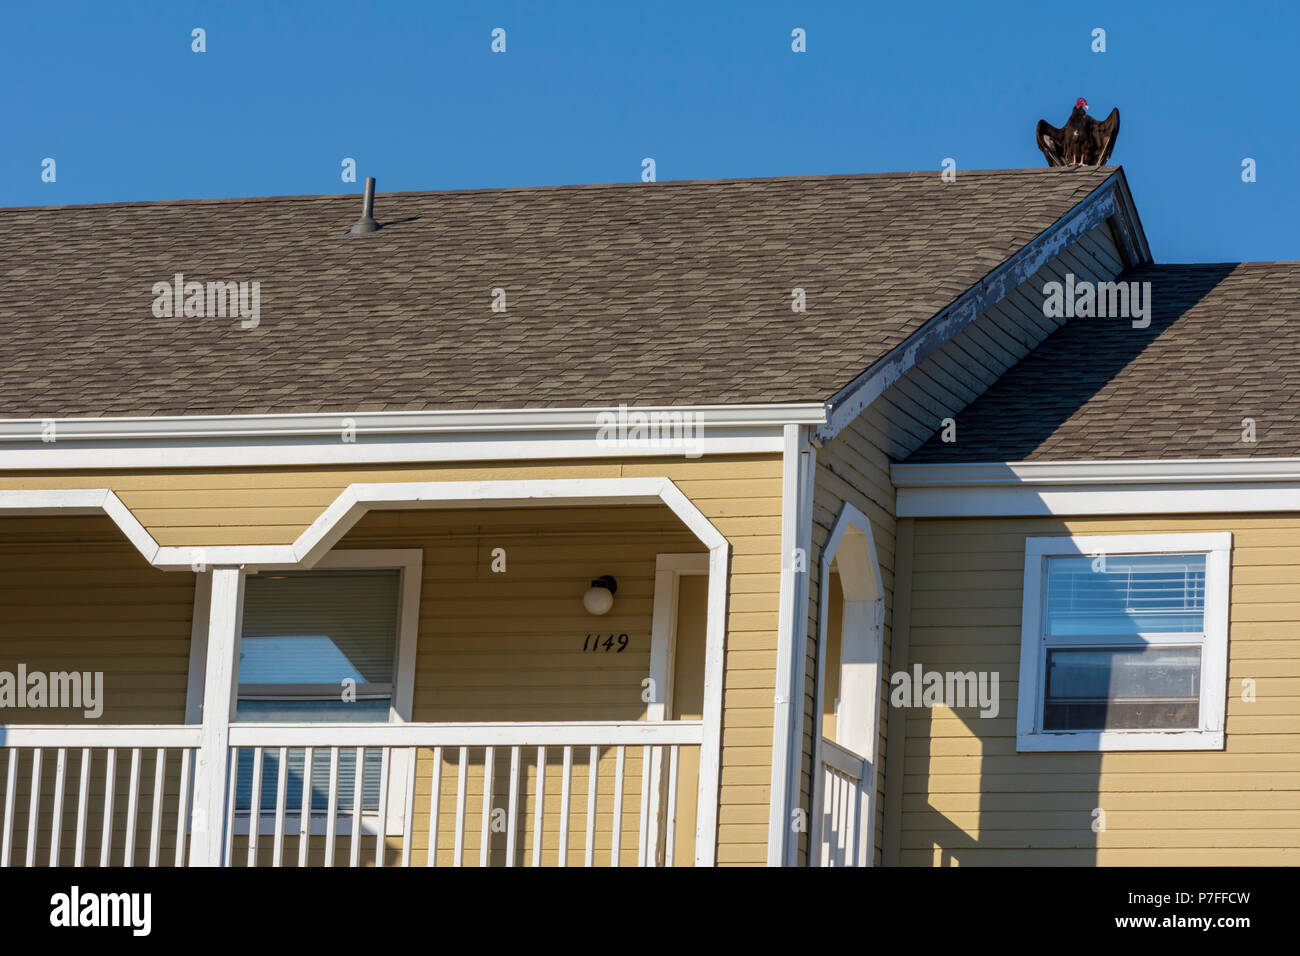 Junge Truthahngeier Trocknung ist Flügel, während er auf dem Dach des Wohnhauses, Castle Rock Colorado USA. Stockfoto